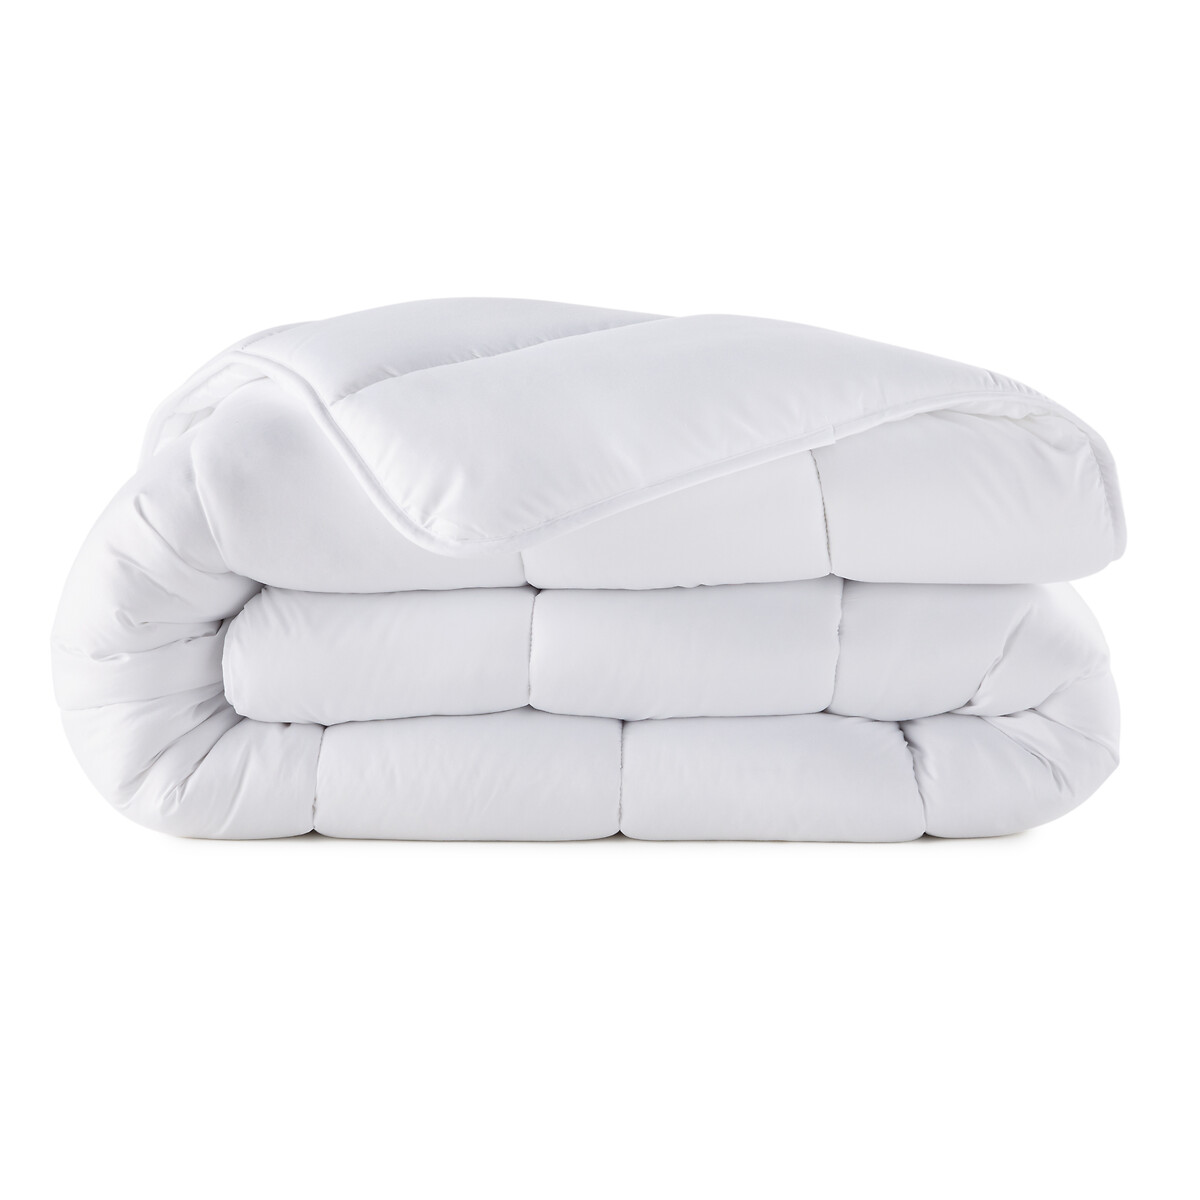 Синтетическое летнее одеяло  225 x 220 см белый LaRedoute, размер 225 x 220 см - фото 2